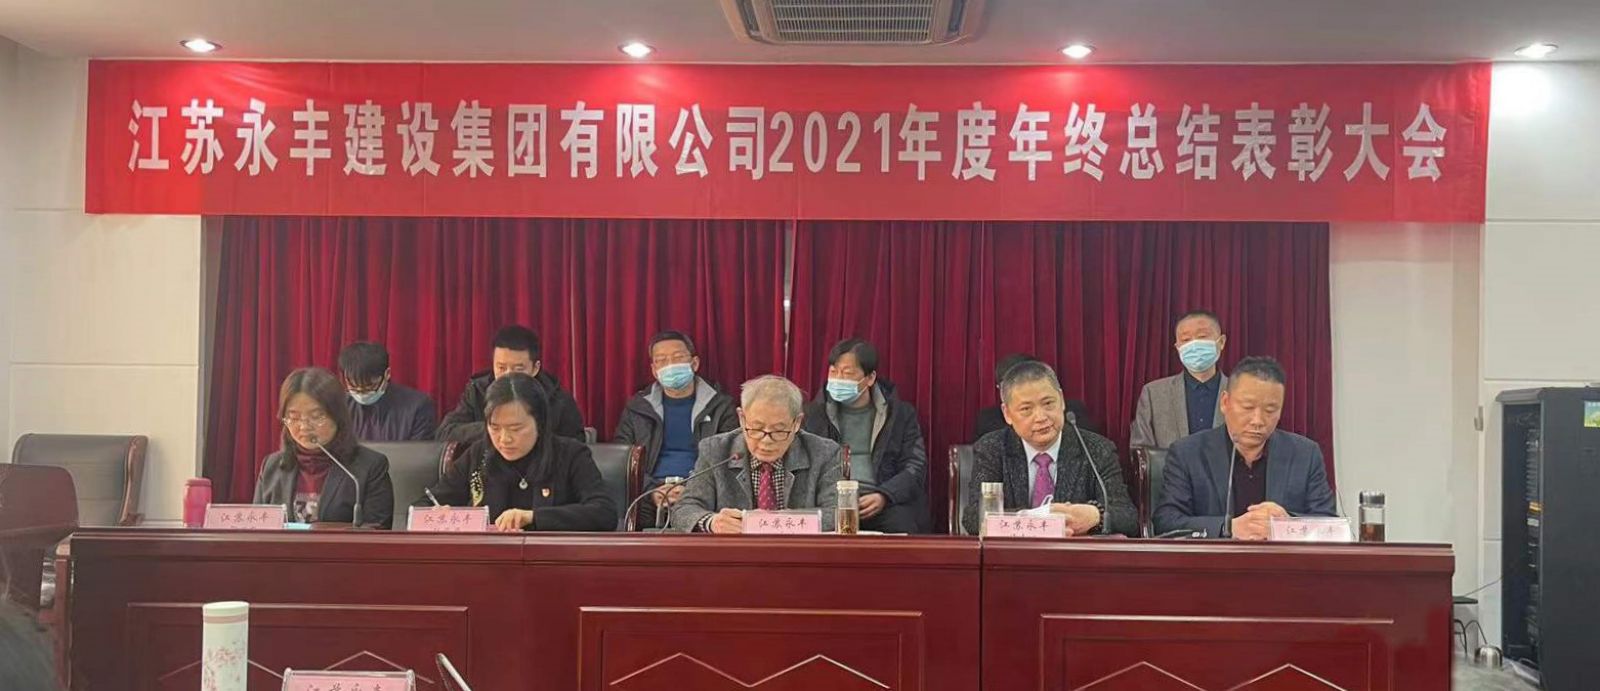 永丰集团2021年度“线上线下”总结表彰大会特别报道